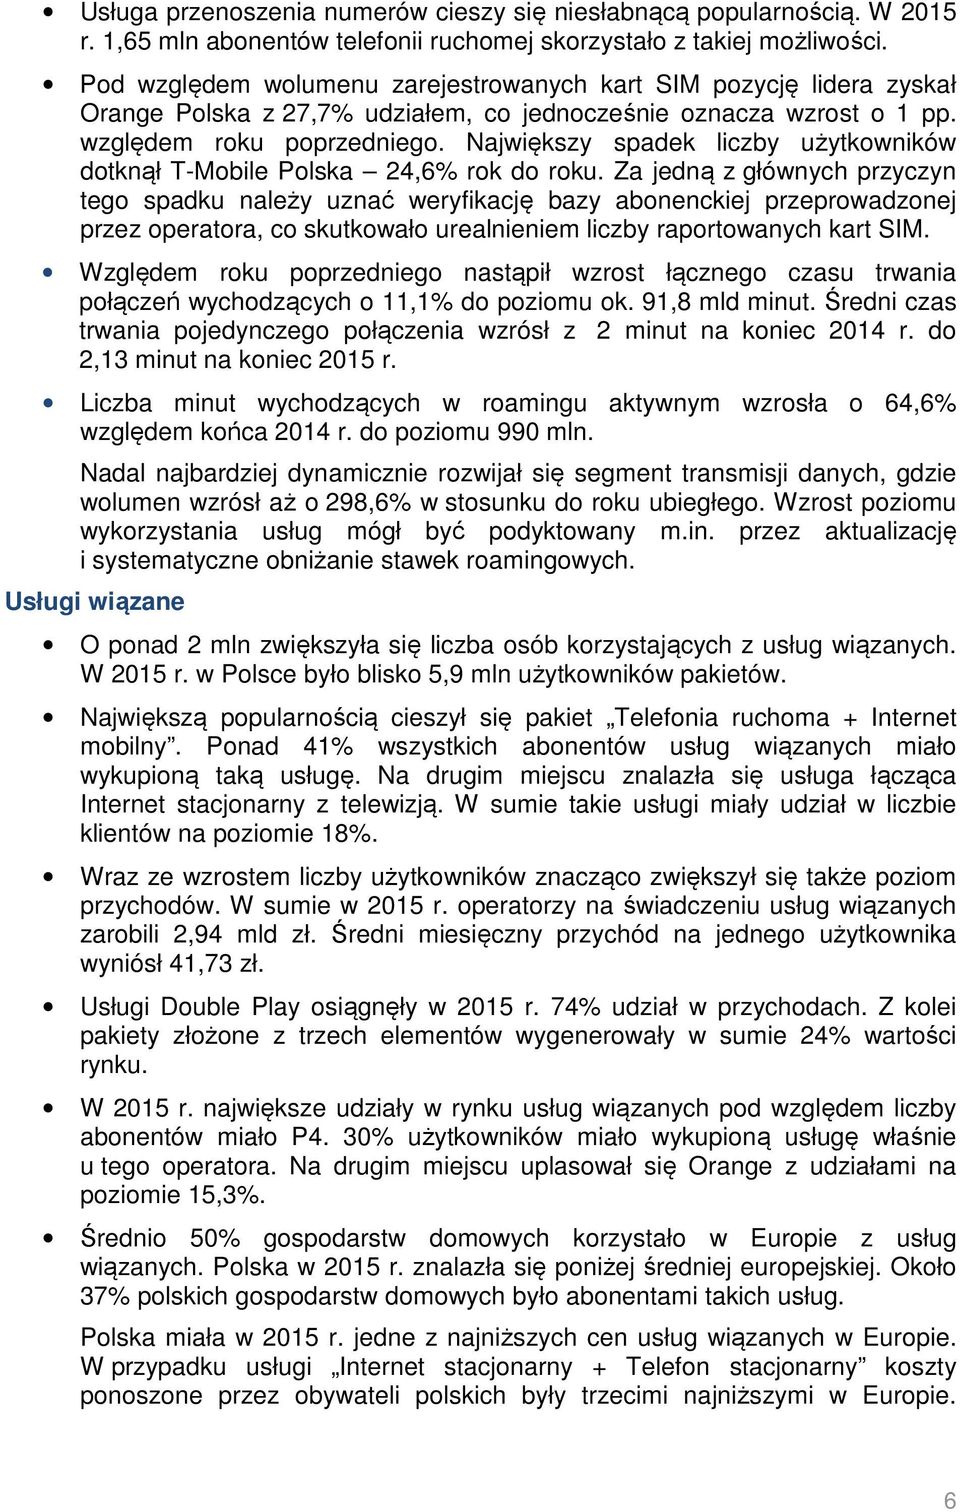 Największy spadek liczby użytkowników dotknął T-Mobile Polska 24,6% rok do roku.